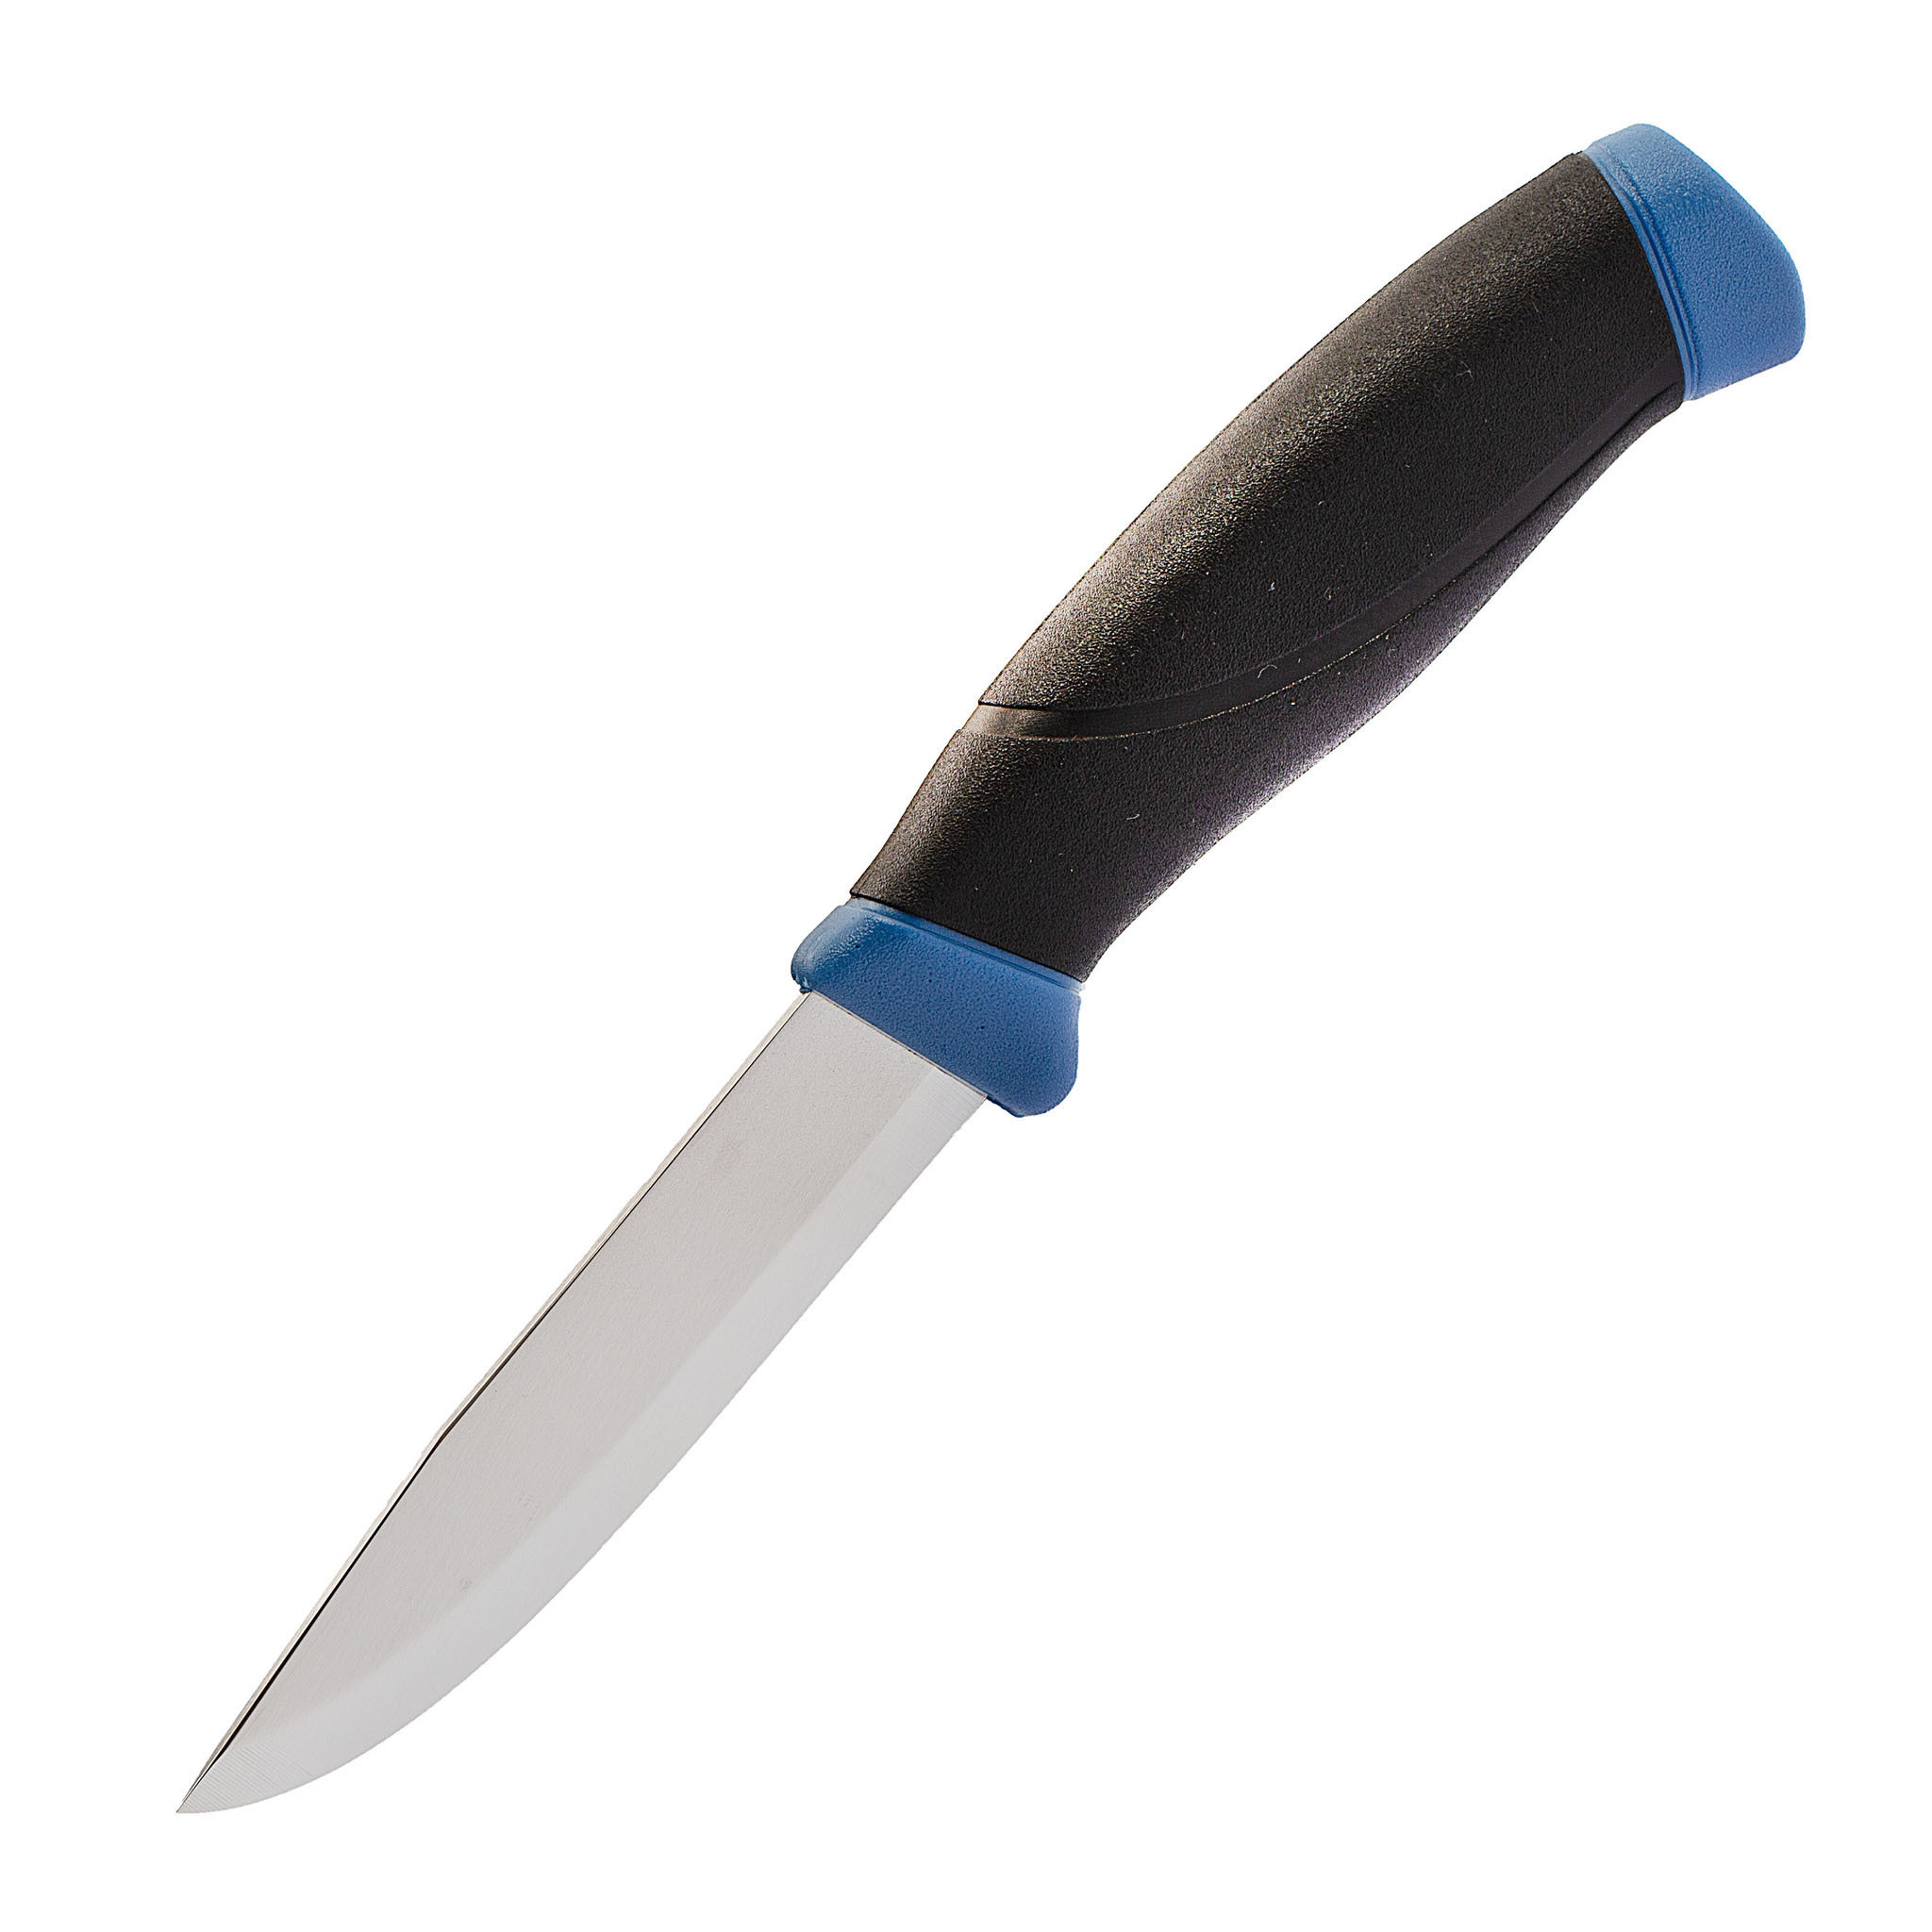 Нож с фиксированным лезвием Morakniv Companion Navy Blue, сталь Sandvik 12C27, рукоять резина/пластик от Ножиков